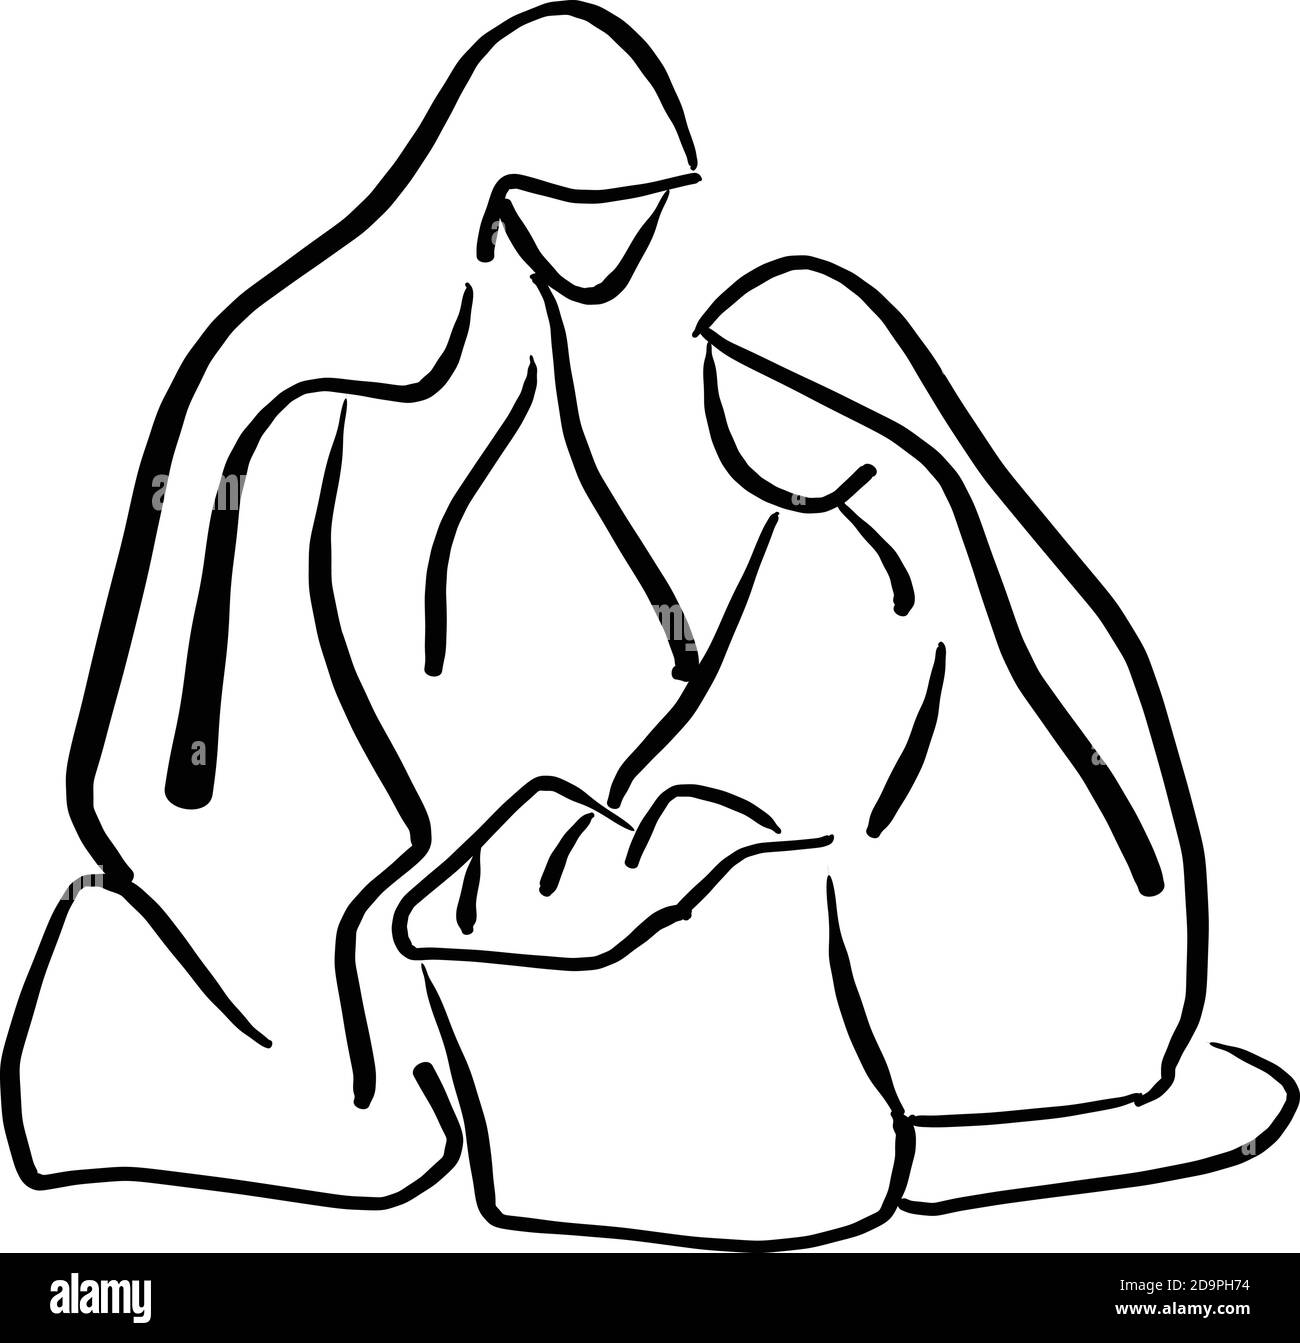 Presepe scena di Gesù bambino in mangiatoia con Maria e. Joseph silhouette vettore illustrazione schizzo doodle mano disegnata con nero linee isolate su bianco Illustrazione Vettoriale